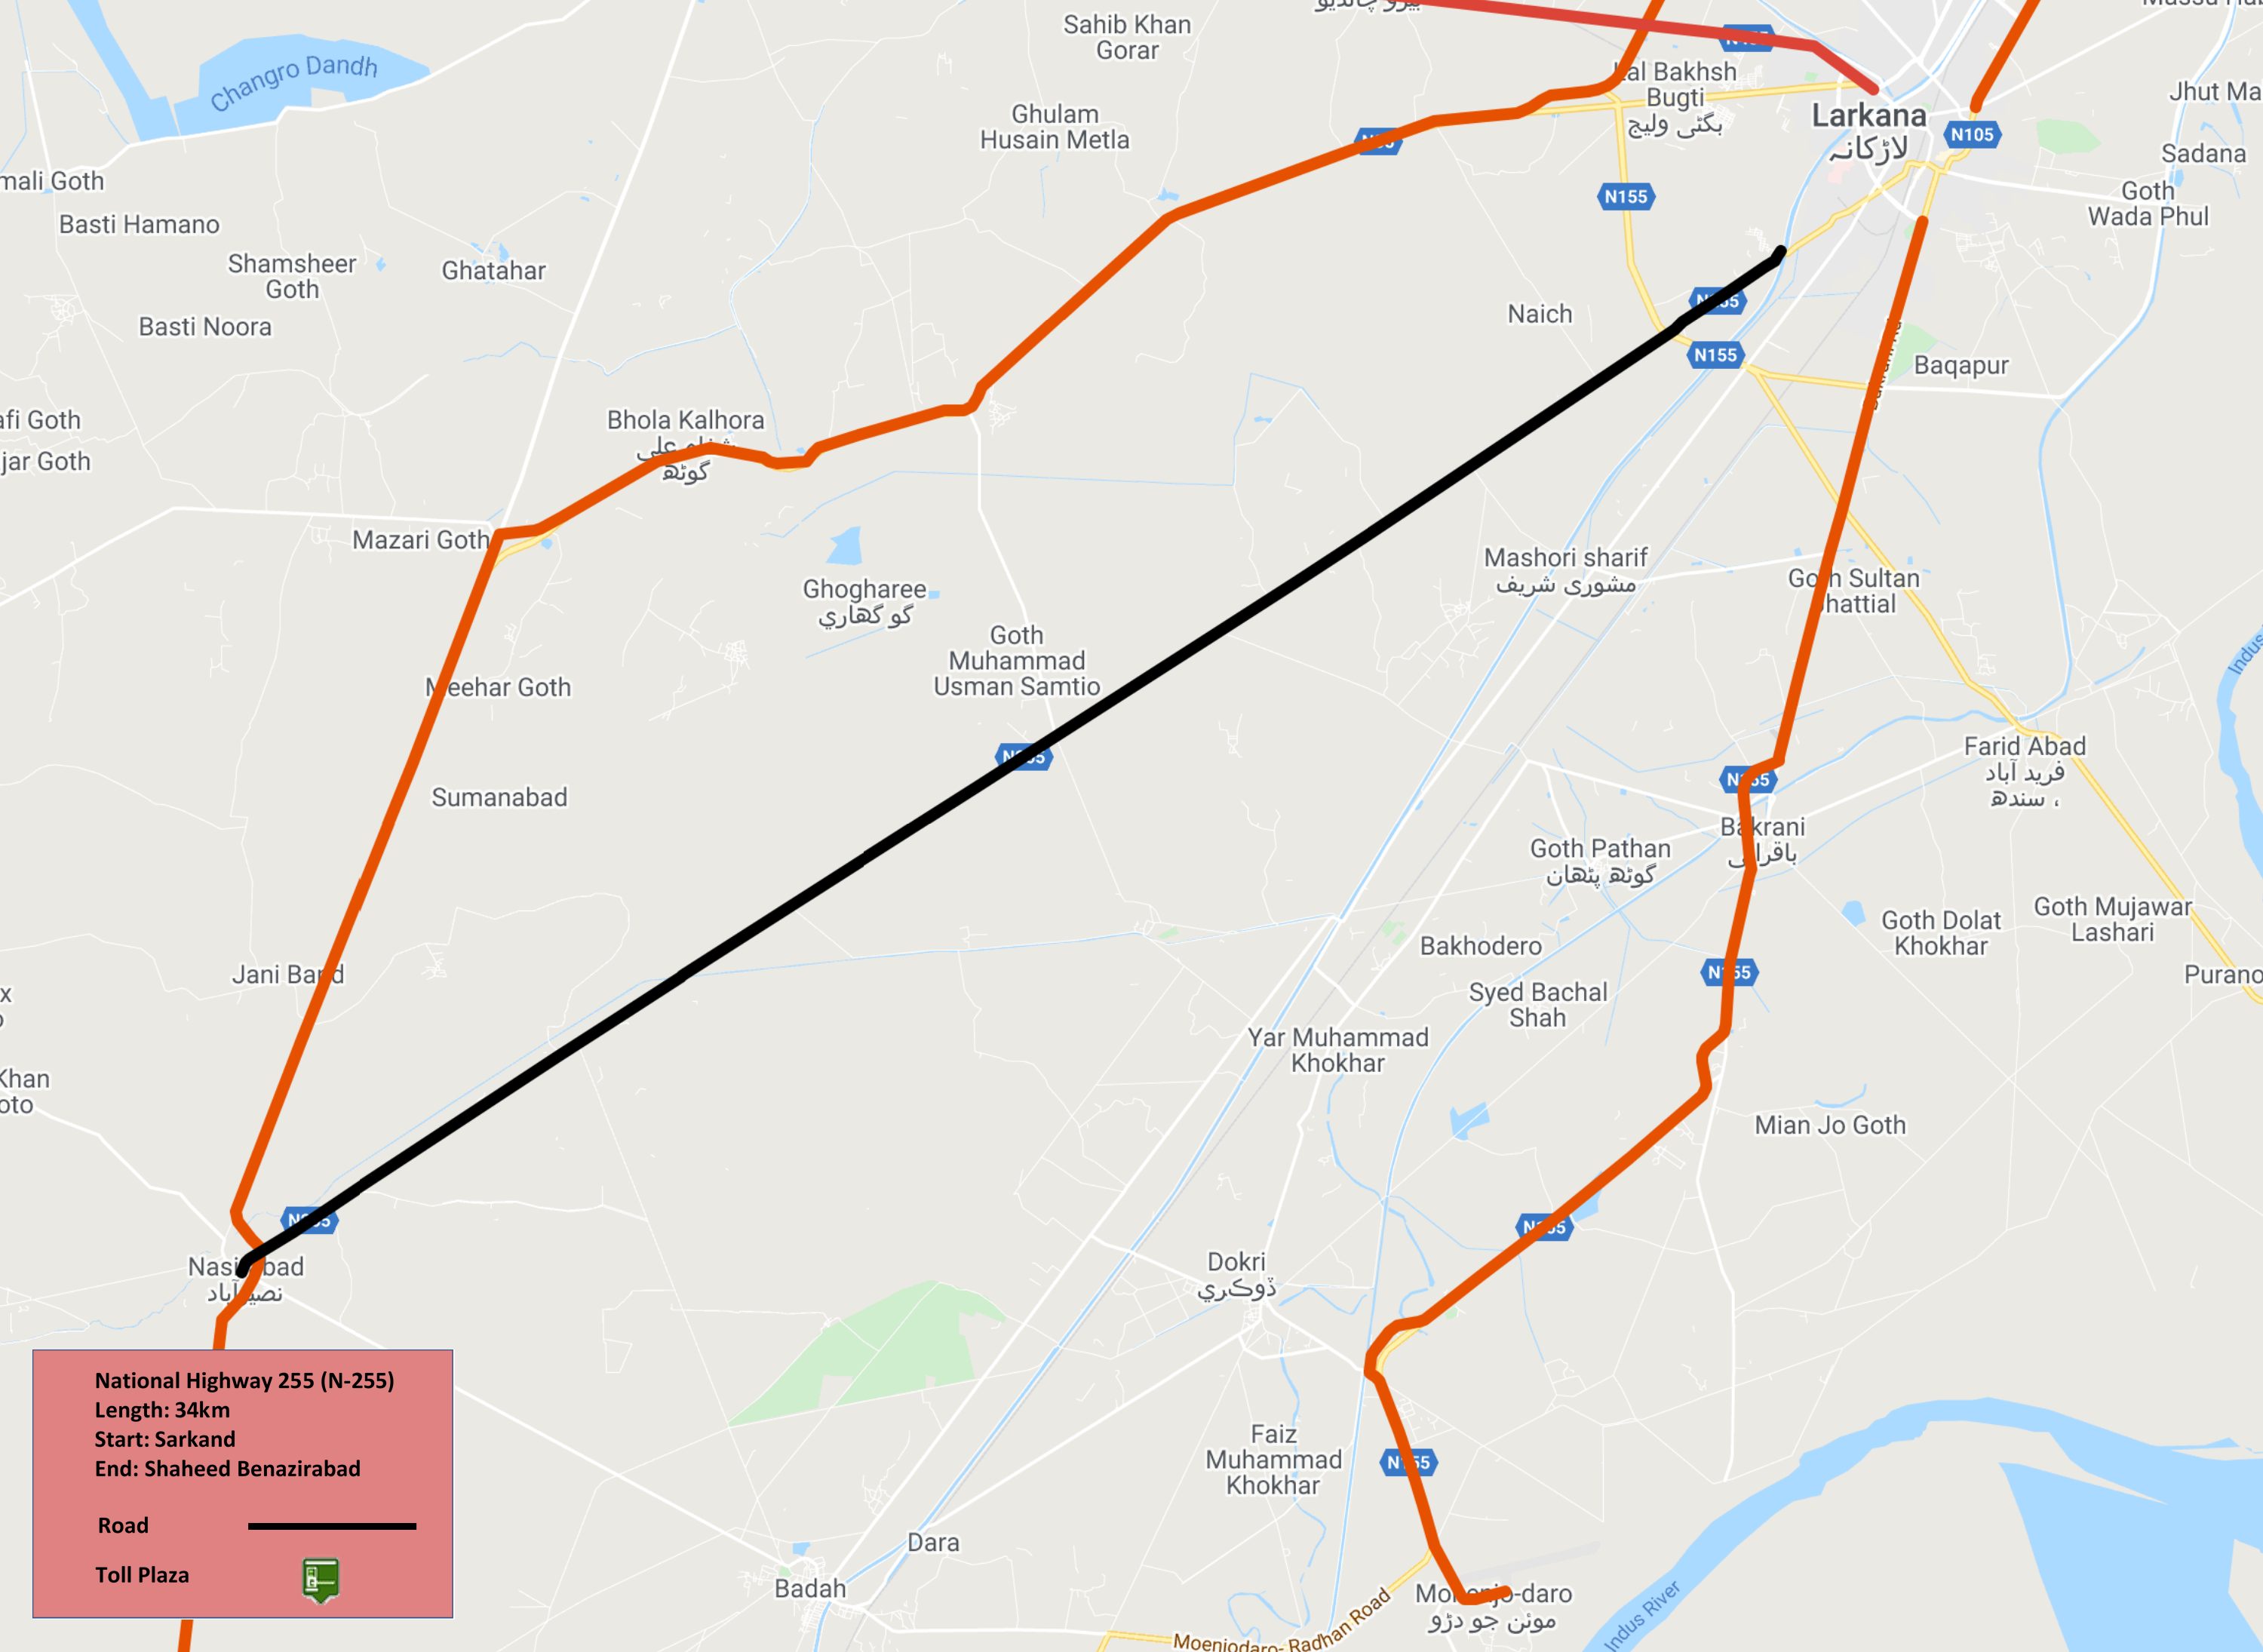 National Highway 255 (Larkana-Nasirabad via Rasheed Wagan) N-255